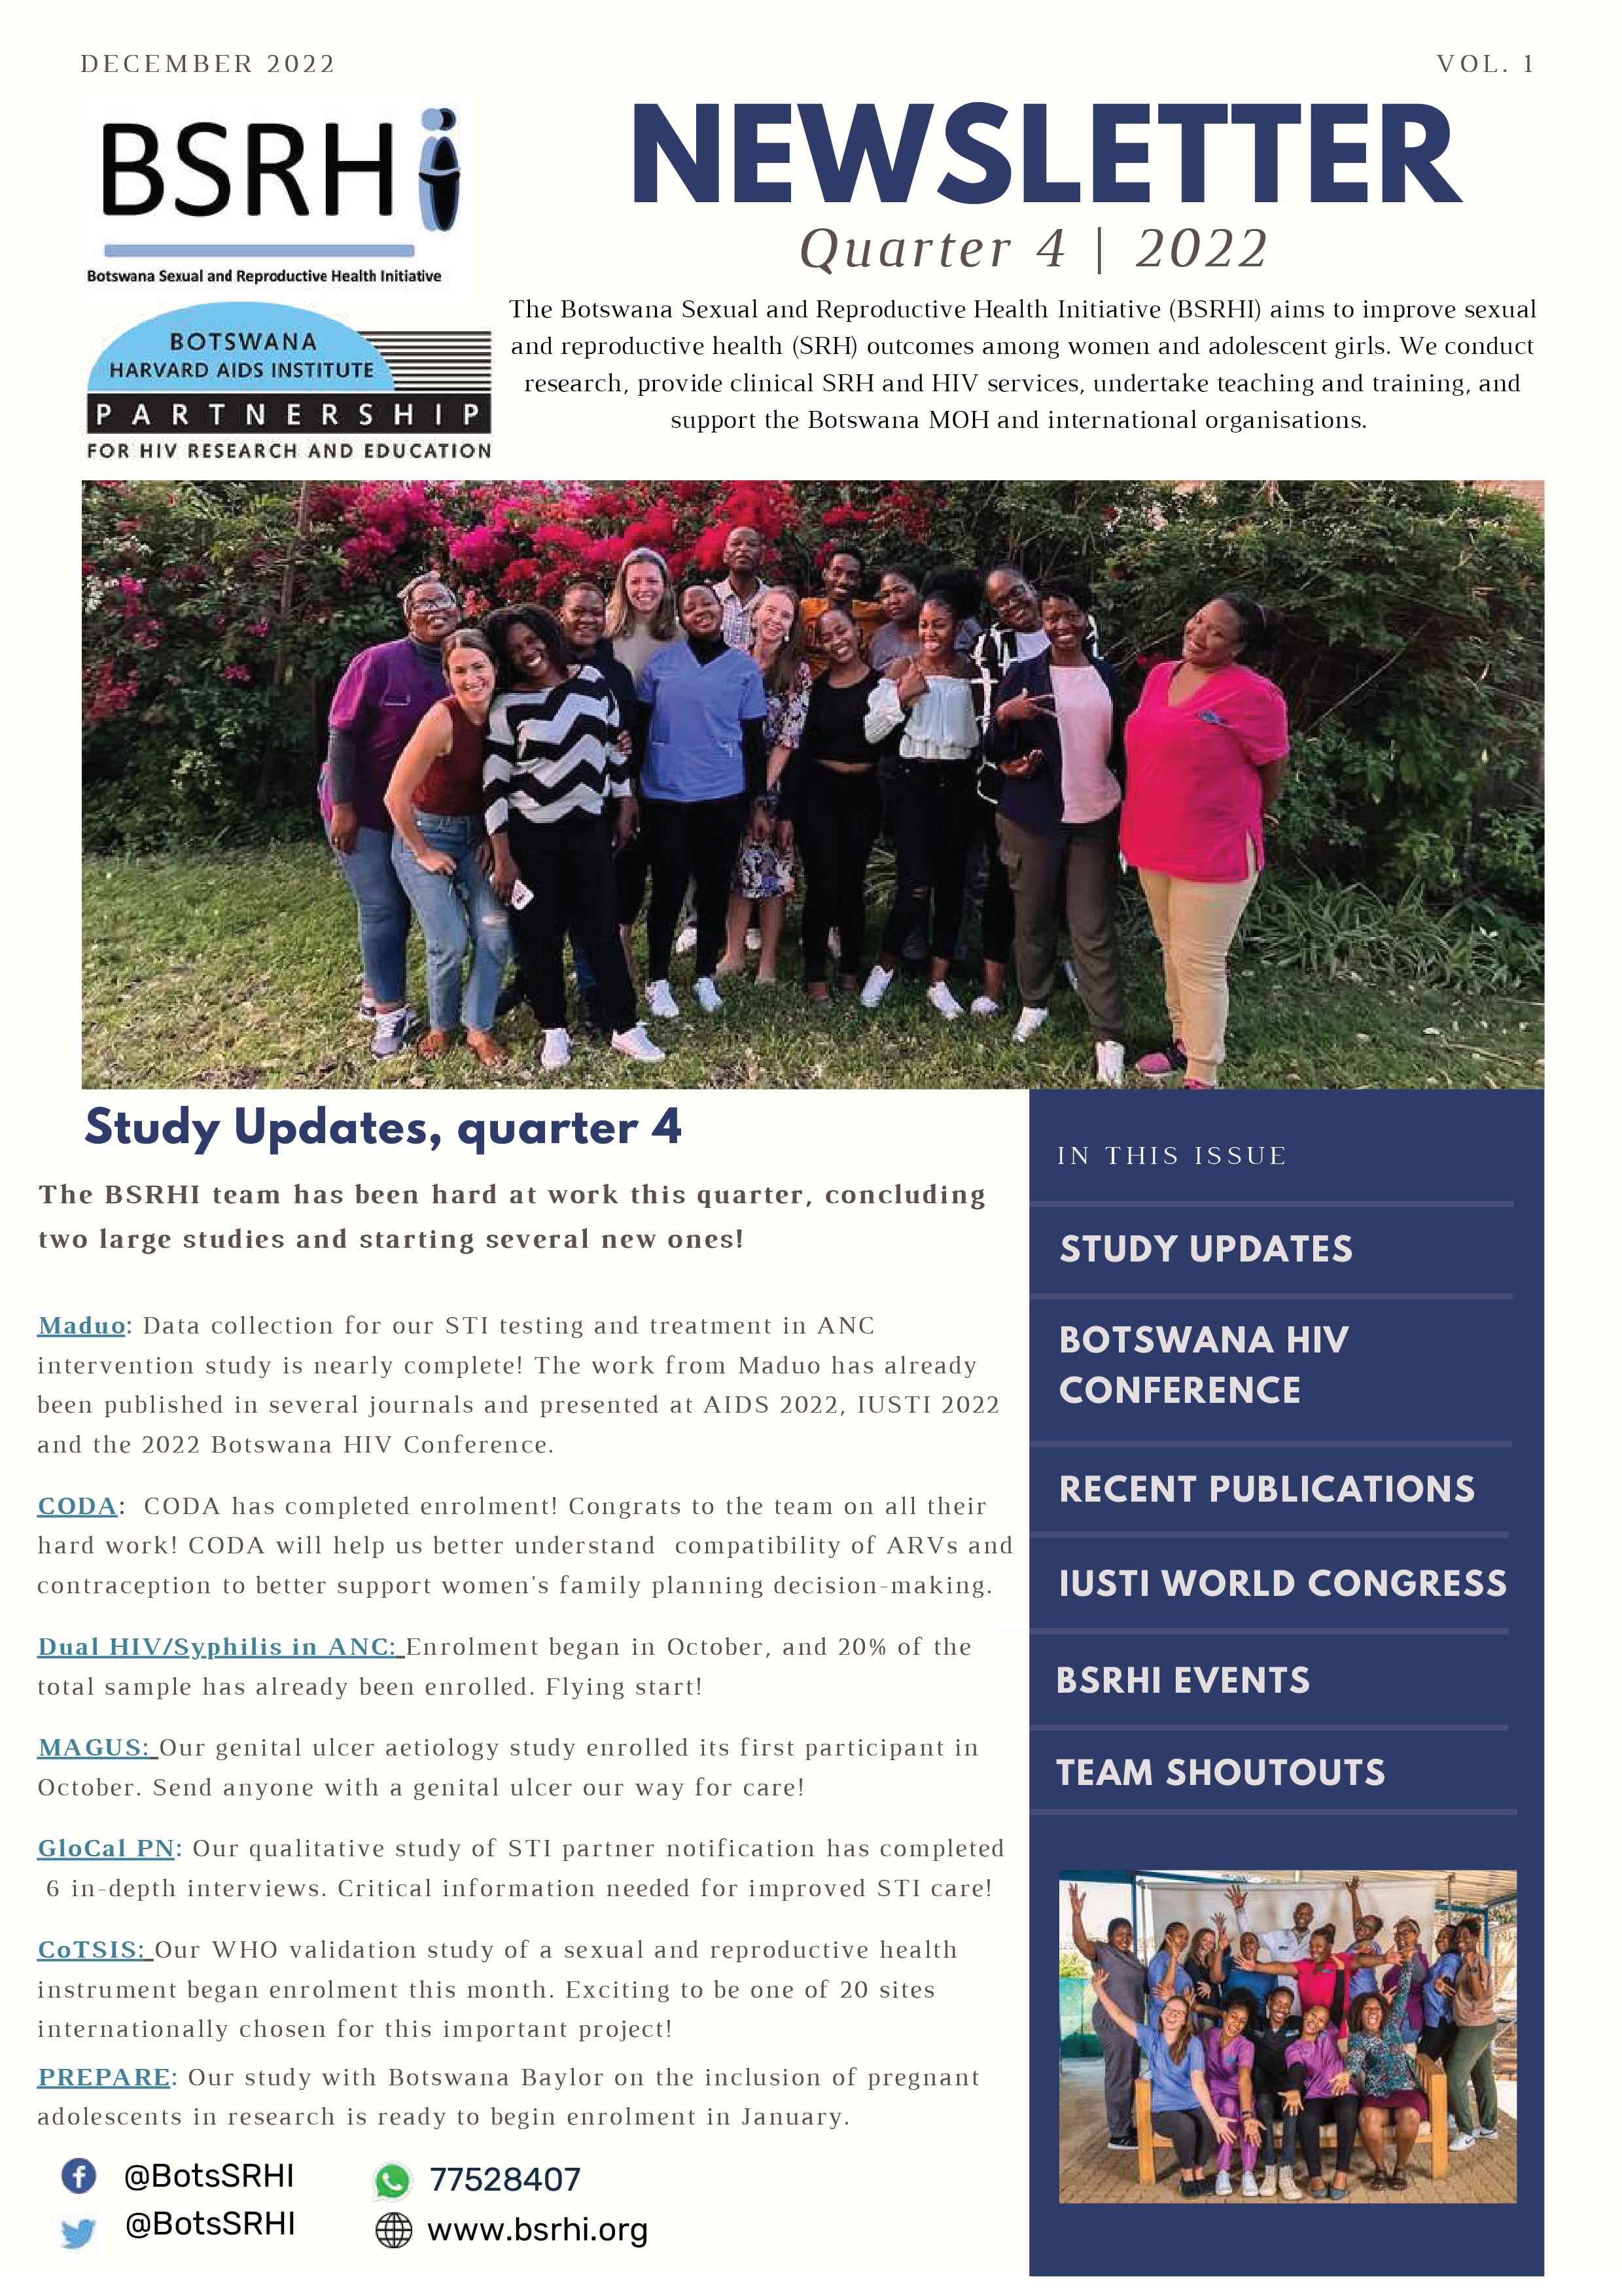 BSRHI Quarter 4 2022 Newsletter